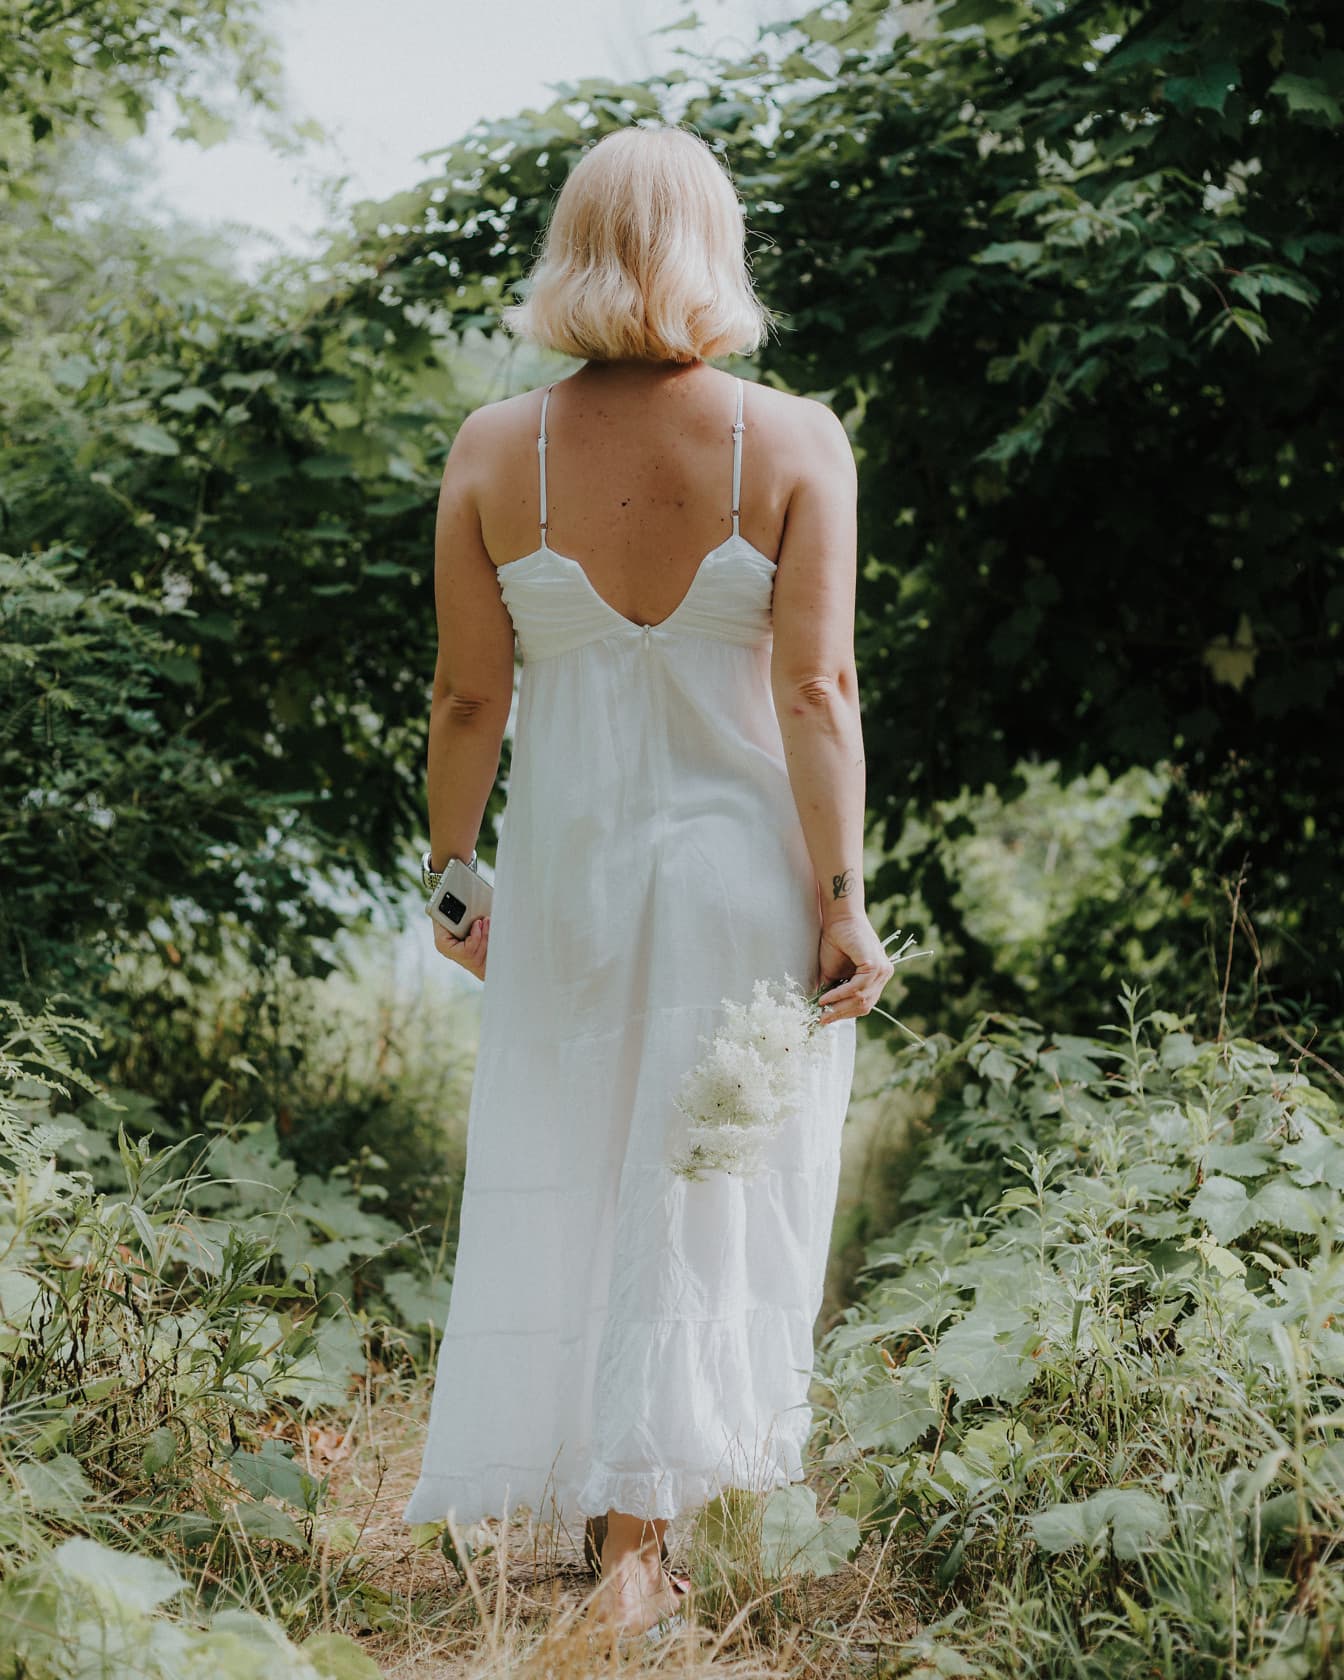 Элегантное белое хлопковое платье на молодой блондинке, гуляющей по лесу